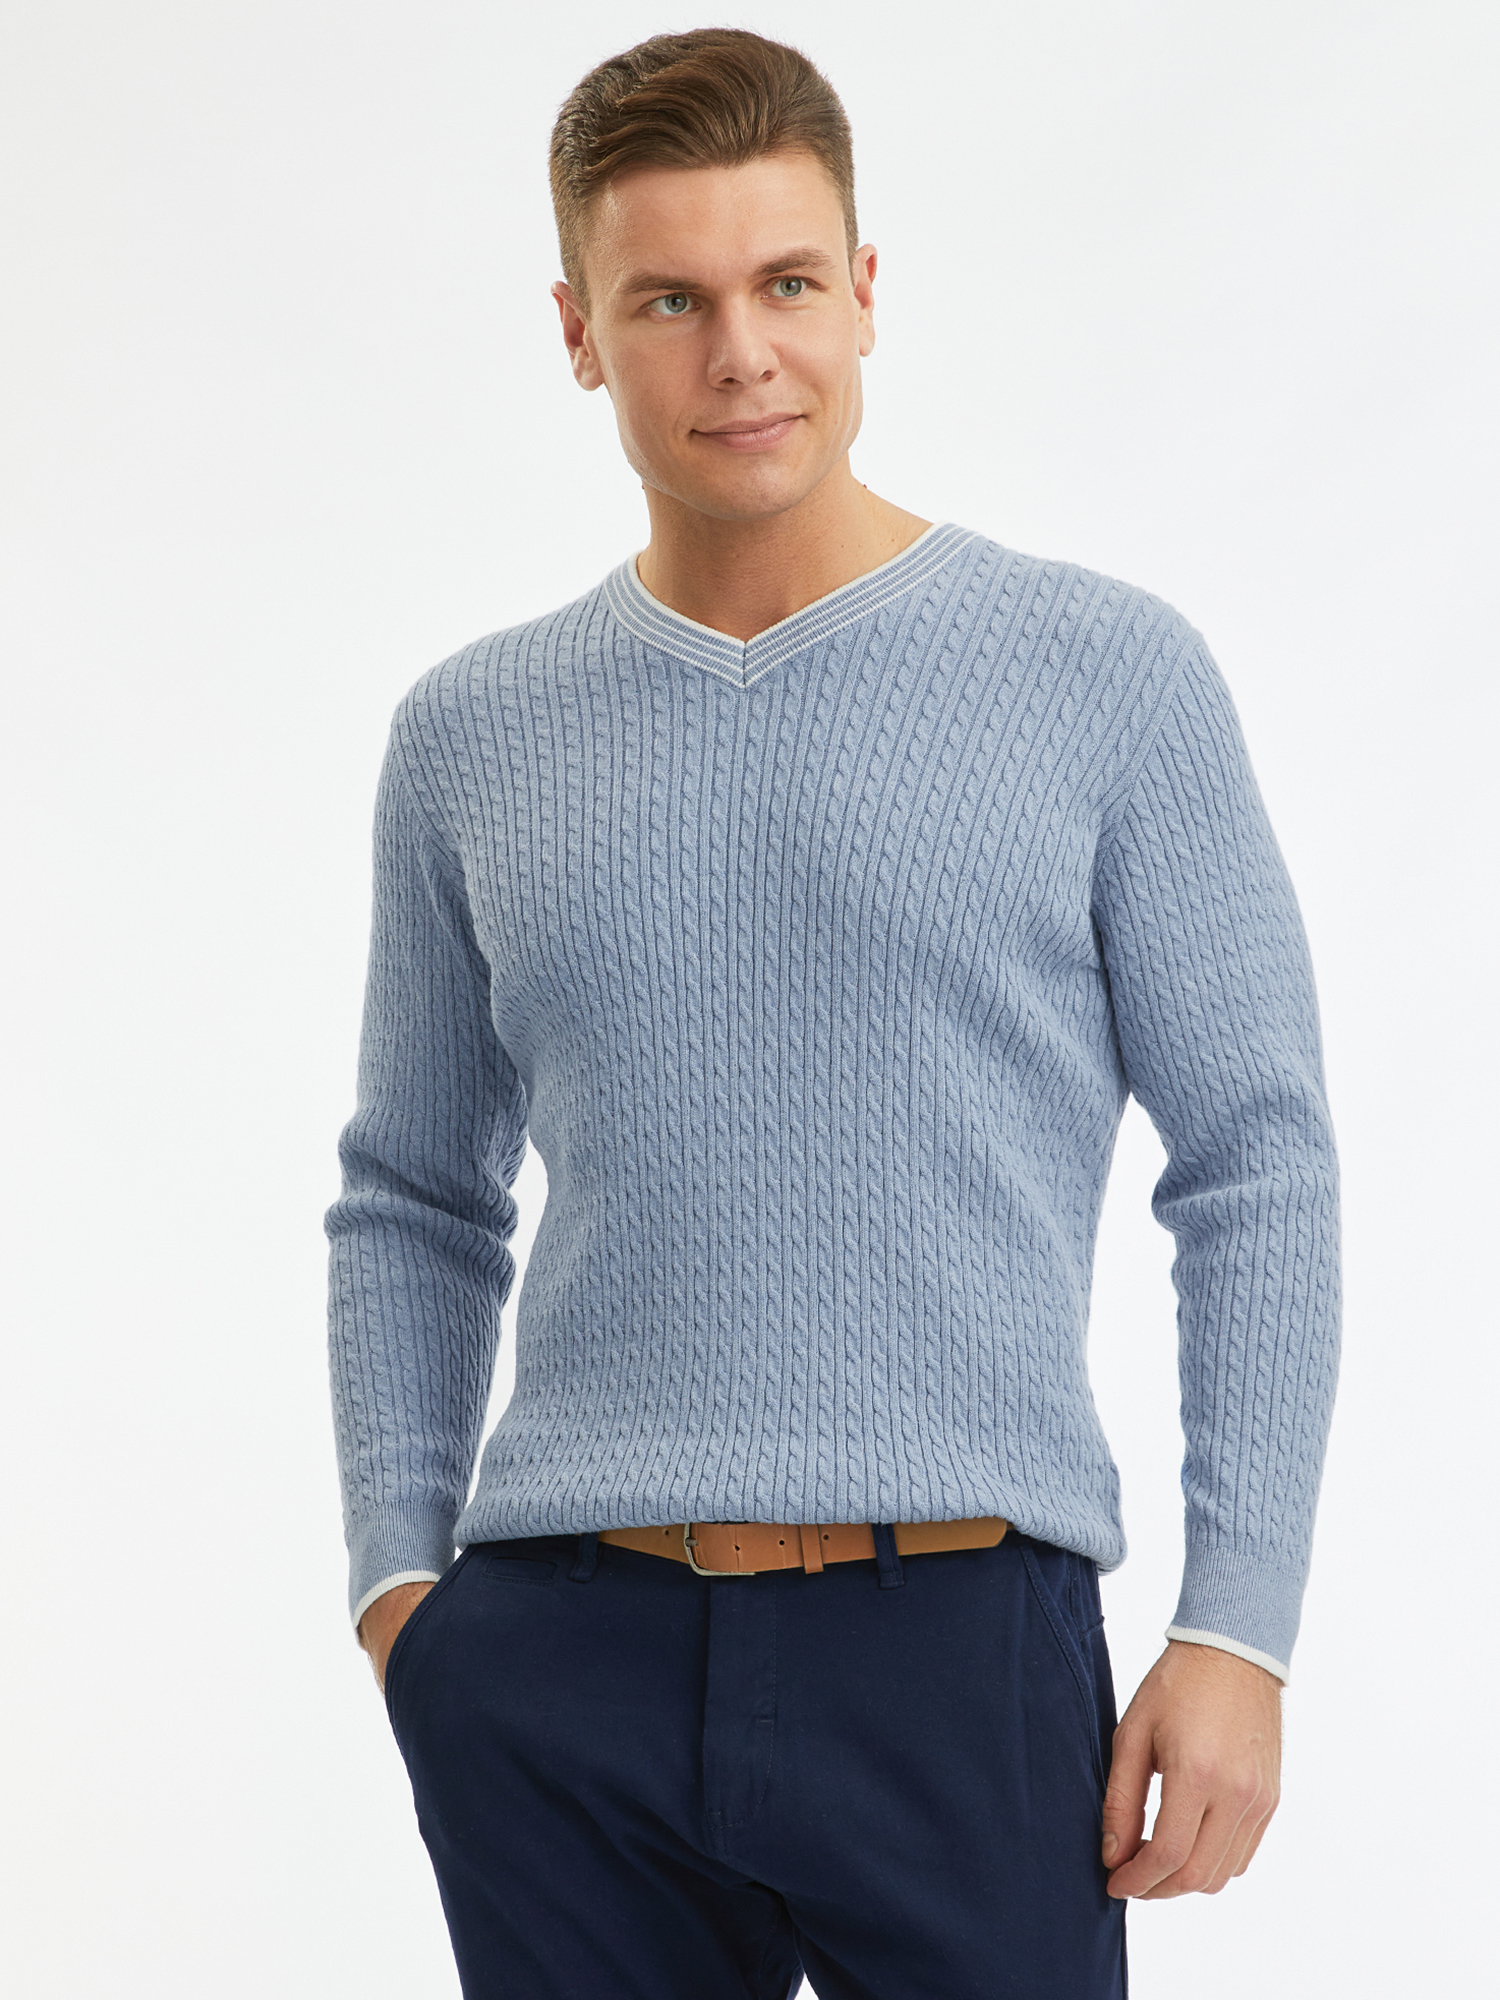 Пуловер мужской oodji 4L212181M синий XL